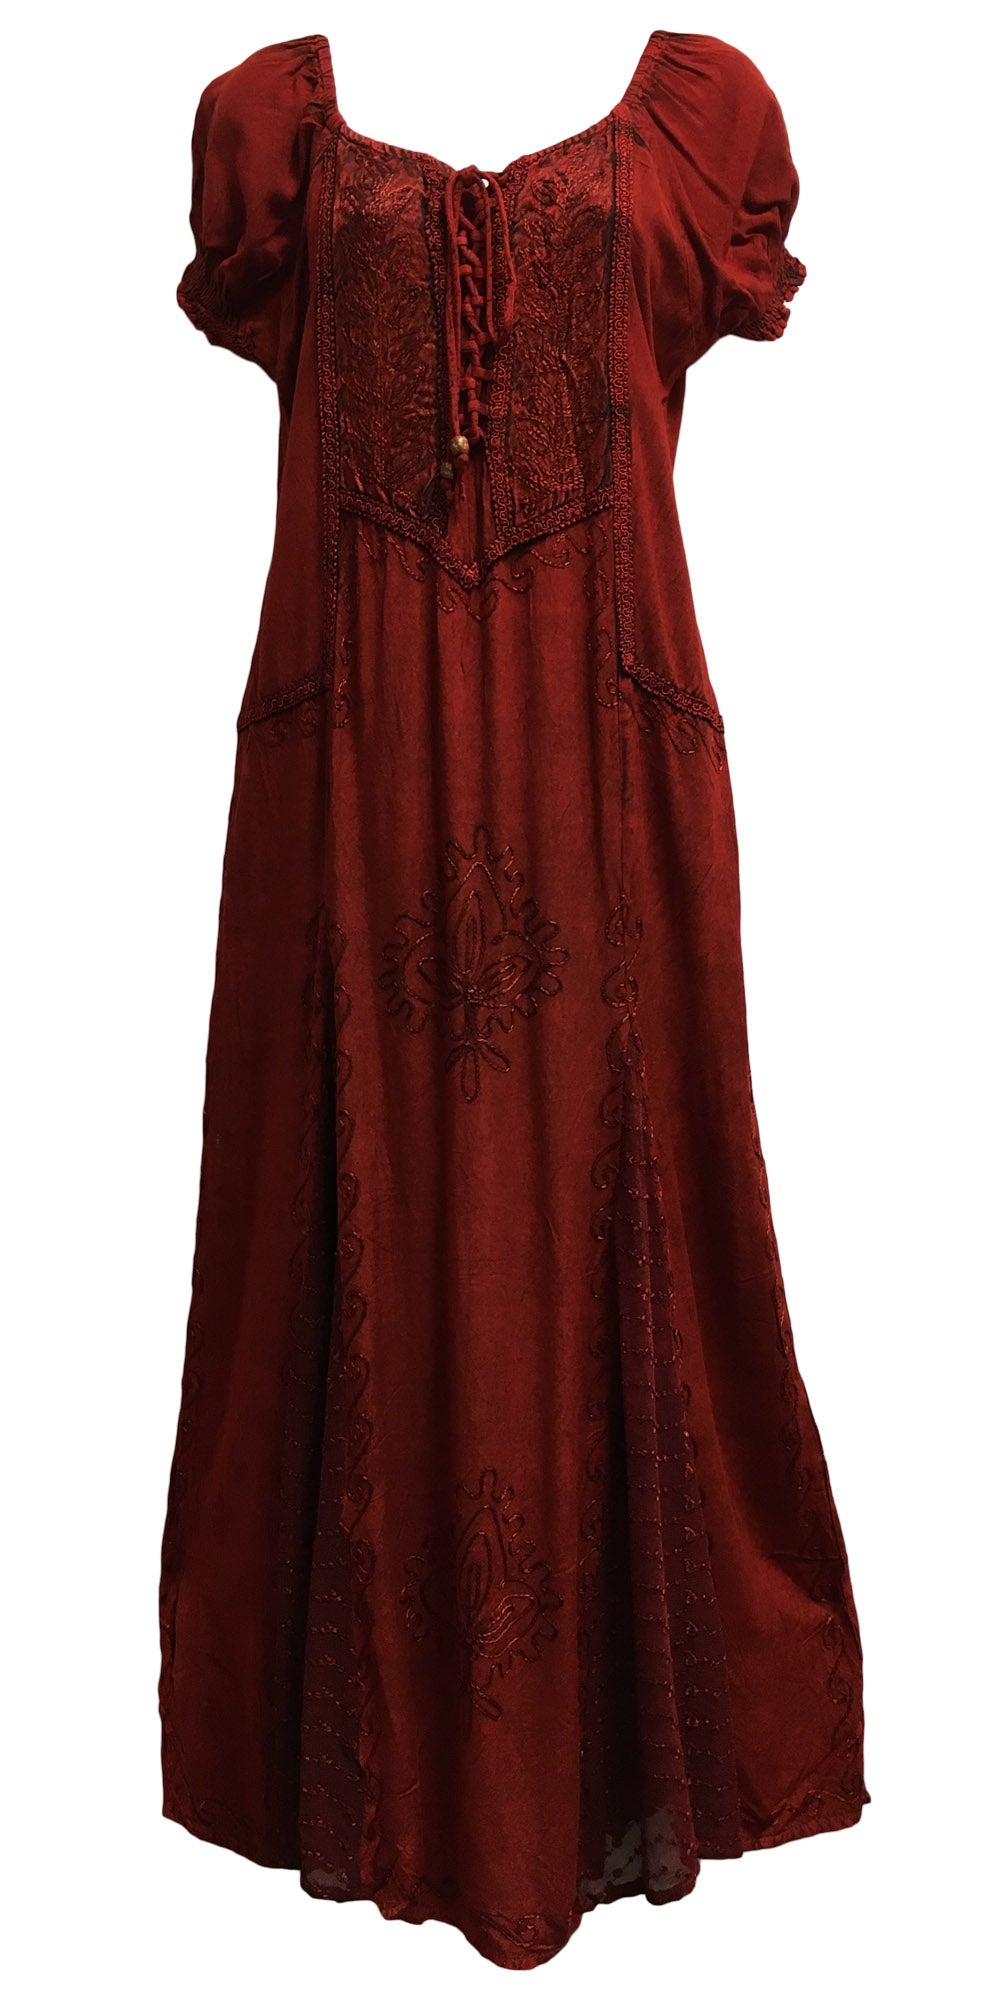 Puffed Sleeve Renaissance Dress